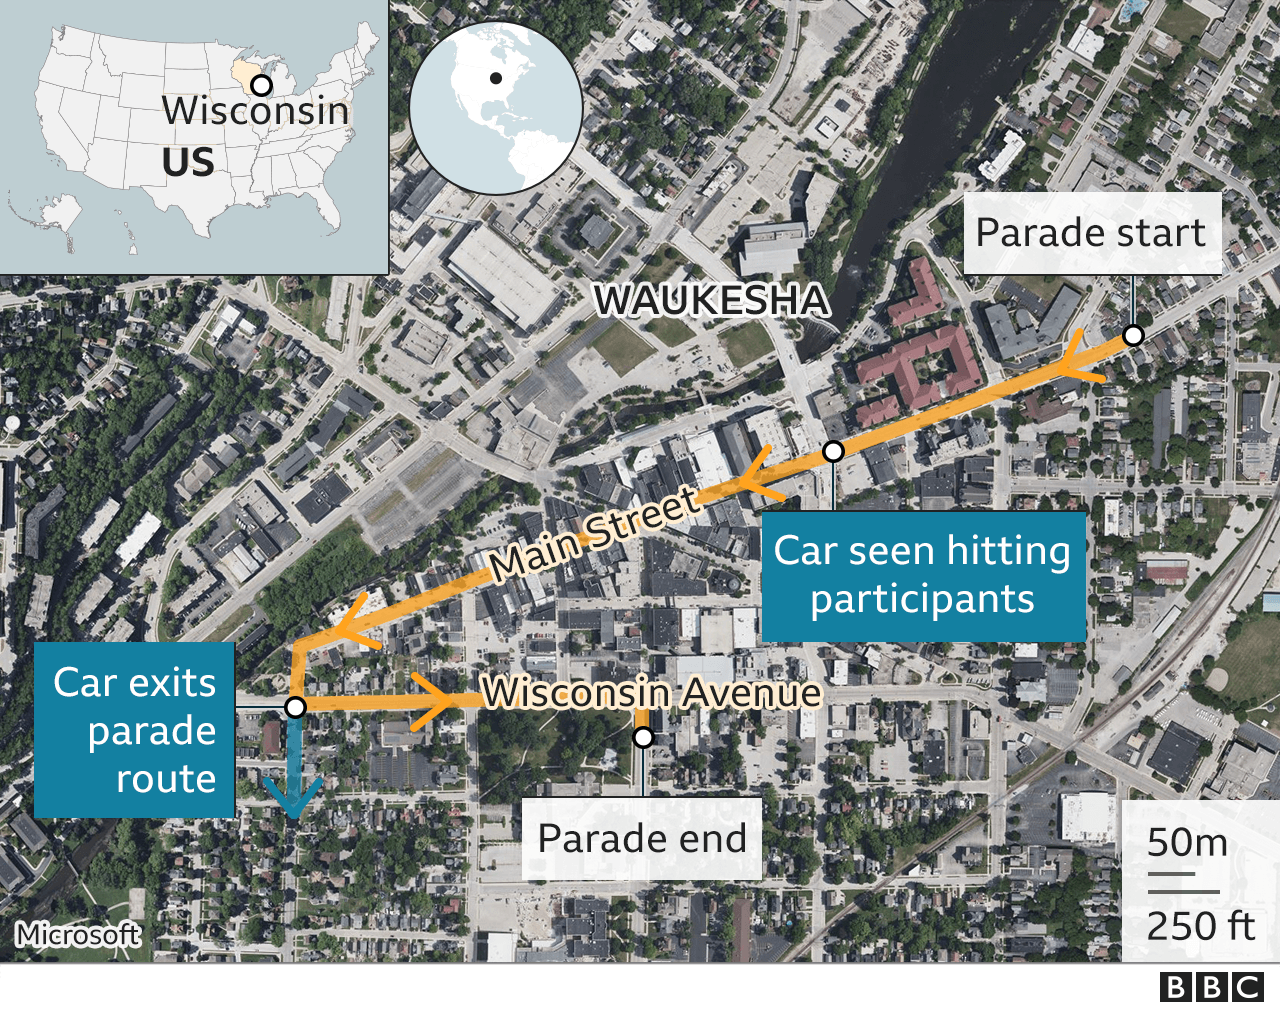 The Waukesha parade route